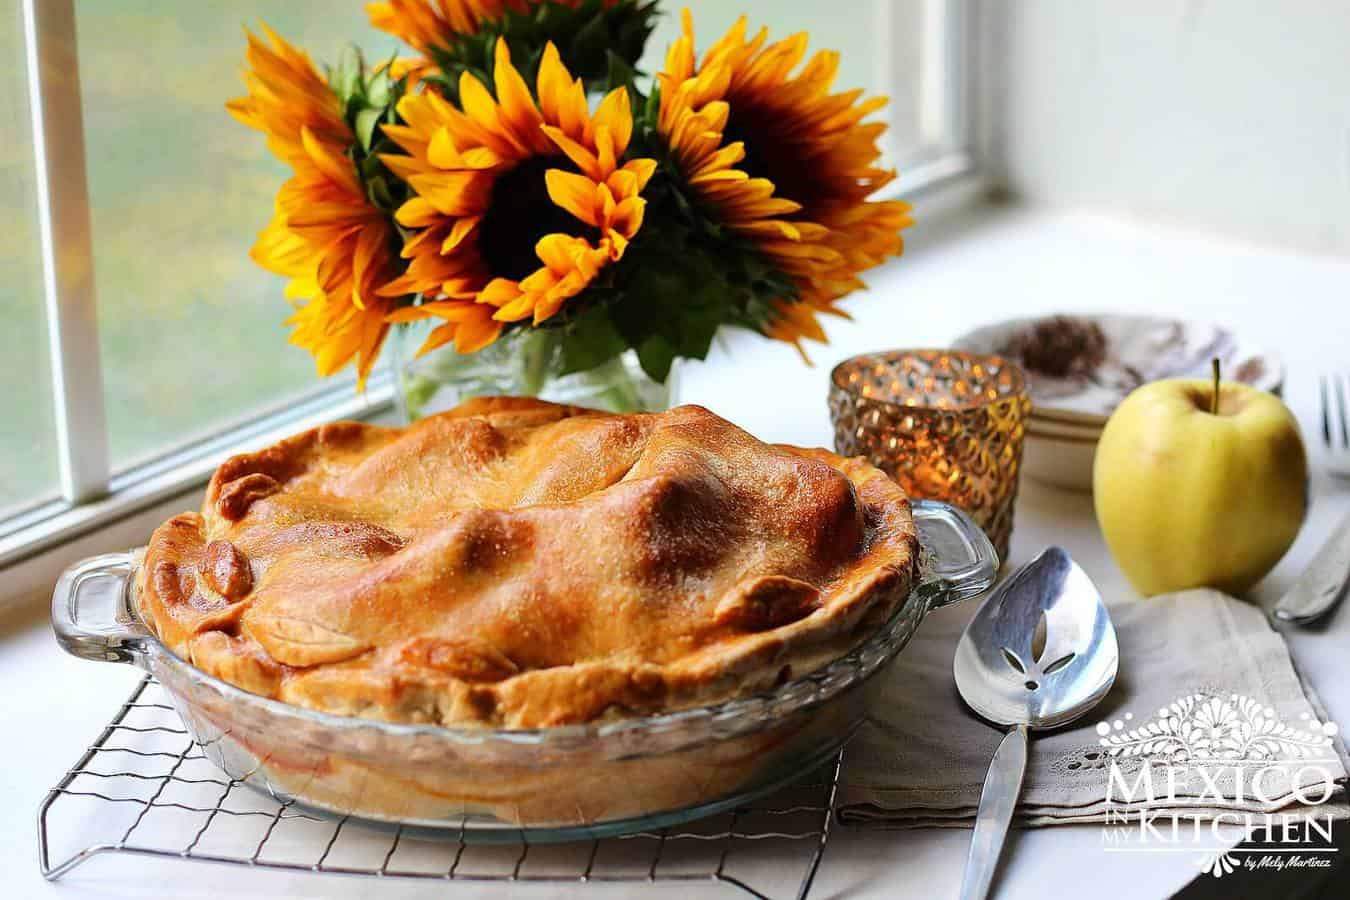 Easy apple pie recipe